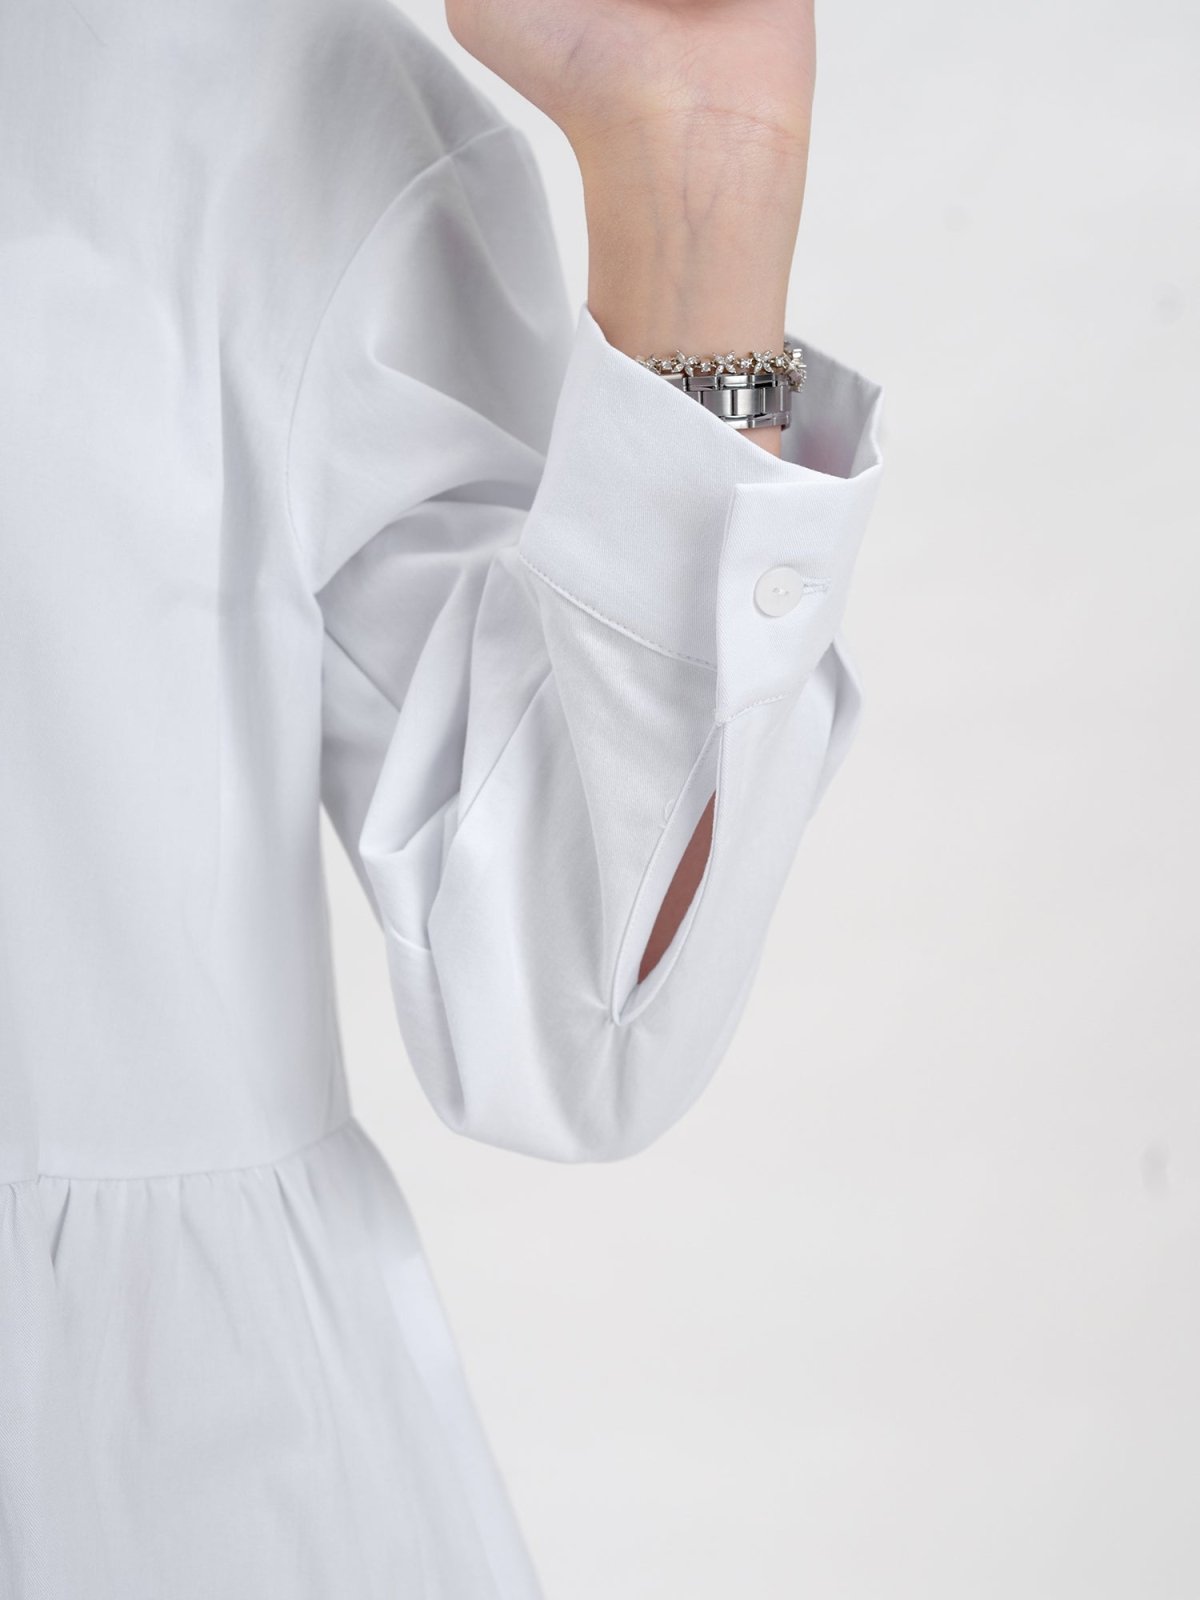 Danae Cut Out Shirt Dress - DAG-DD9619-22MochiIvoryF - Marshmallow White - F - D'ZAGE Designs